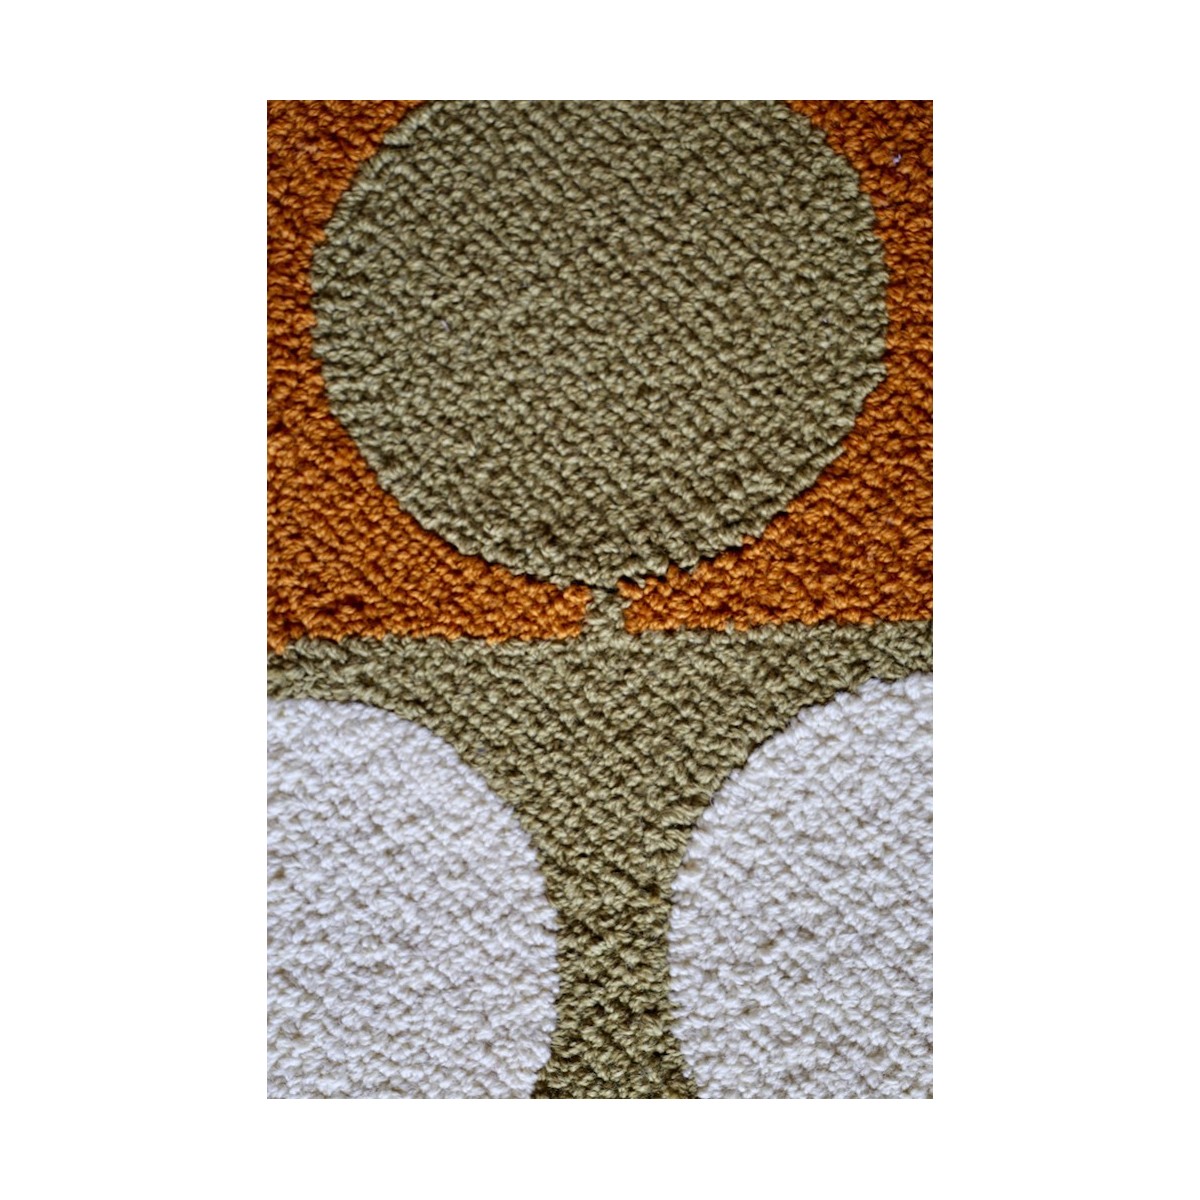 175x175 cm - yellow/orange - Circle rug